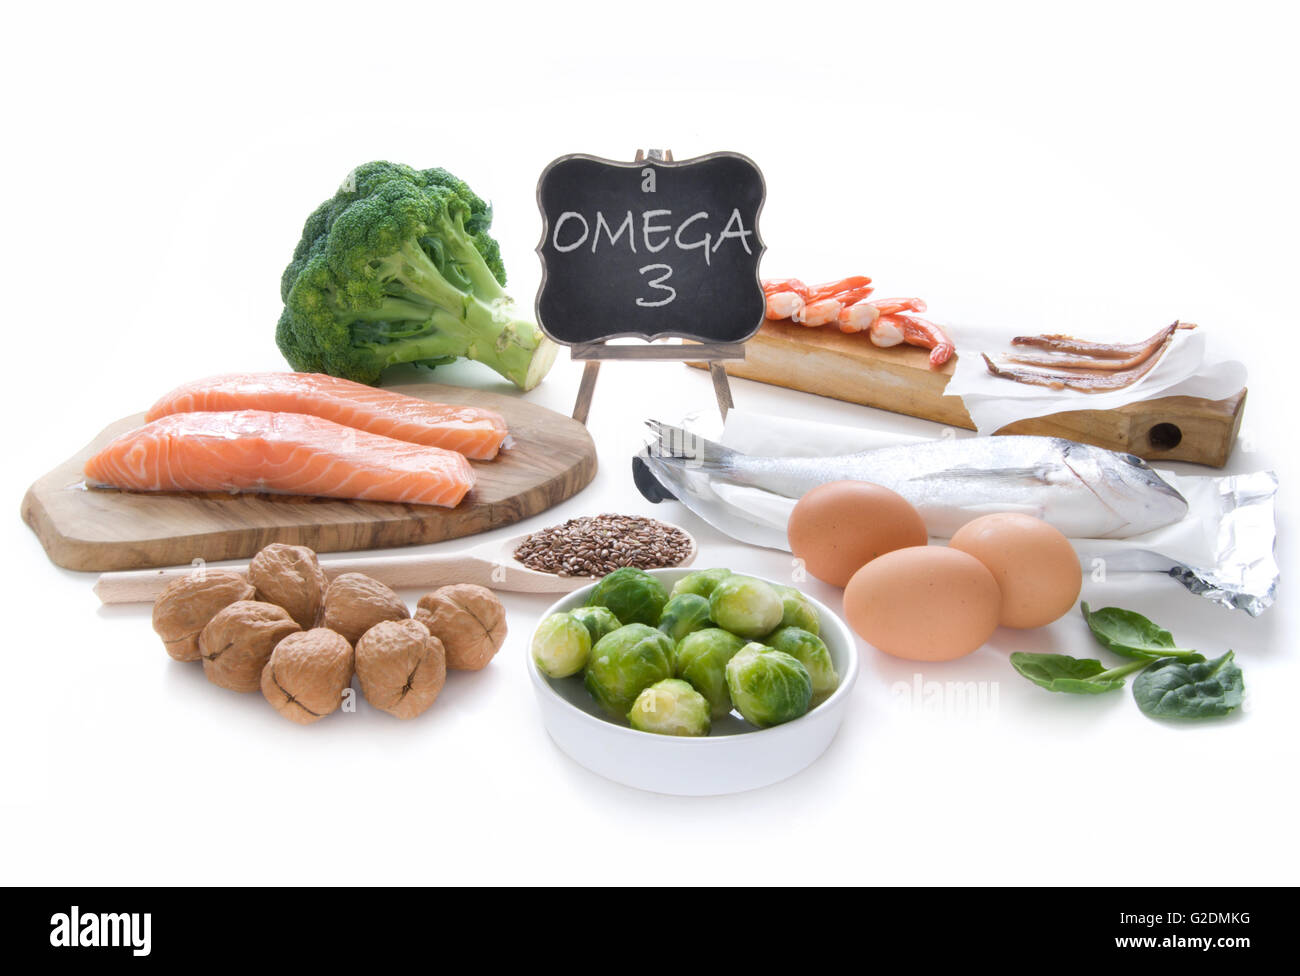 Recogida de alimentos ricos en ácidos grasos omega 3, incluyendo mariscos, legumbres y semillas sobre un fondo blanco. Foto de stock